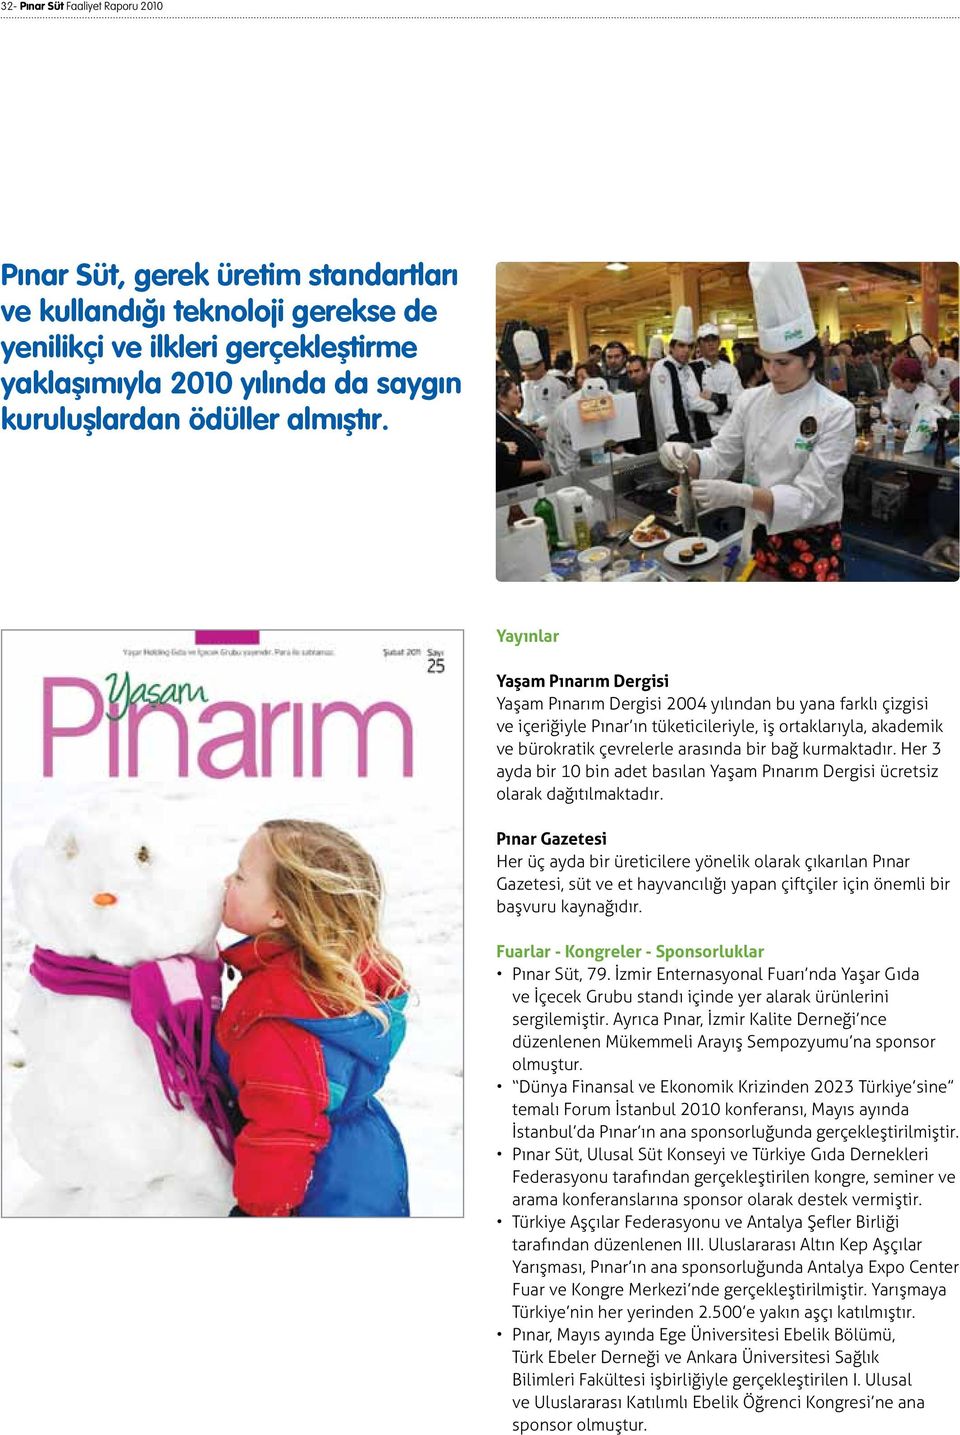 Yayınlar Yaşam Pınarım Dergisi Yaşam Pınarım Dergisi 2004 yılından bu yana farklı çizgisi ve içeriğiyle Pınar ın tüketicileriyle, iş ortaklarıyla, akademik ve bürokratik çevrelerle arasında bir bağ